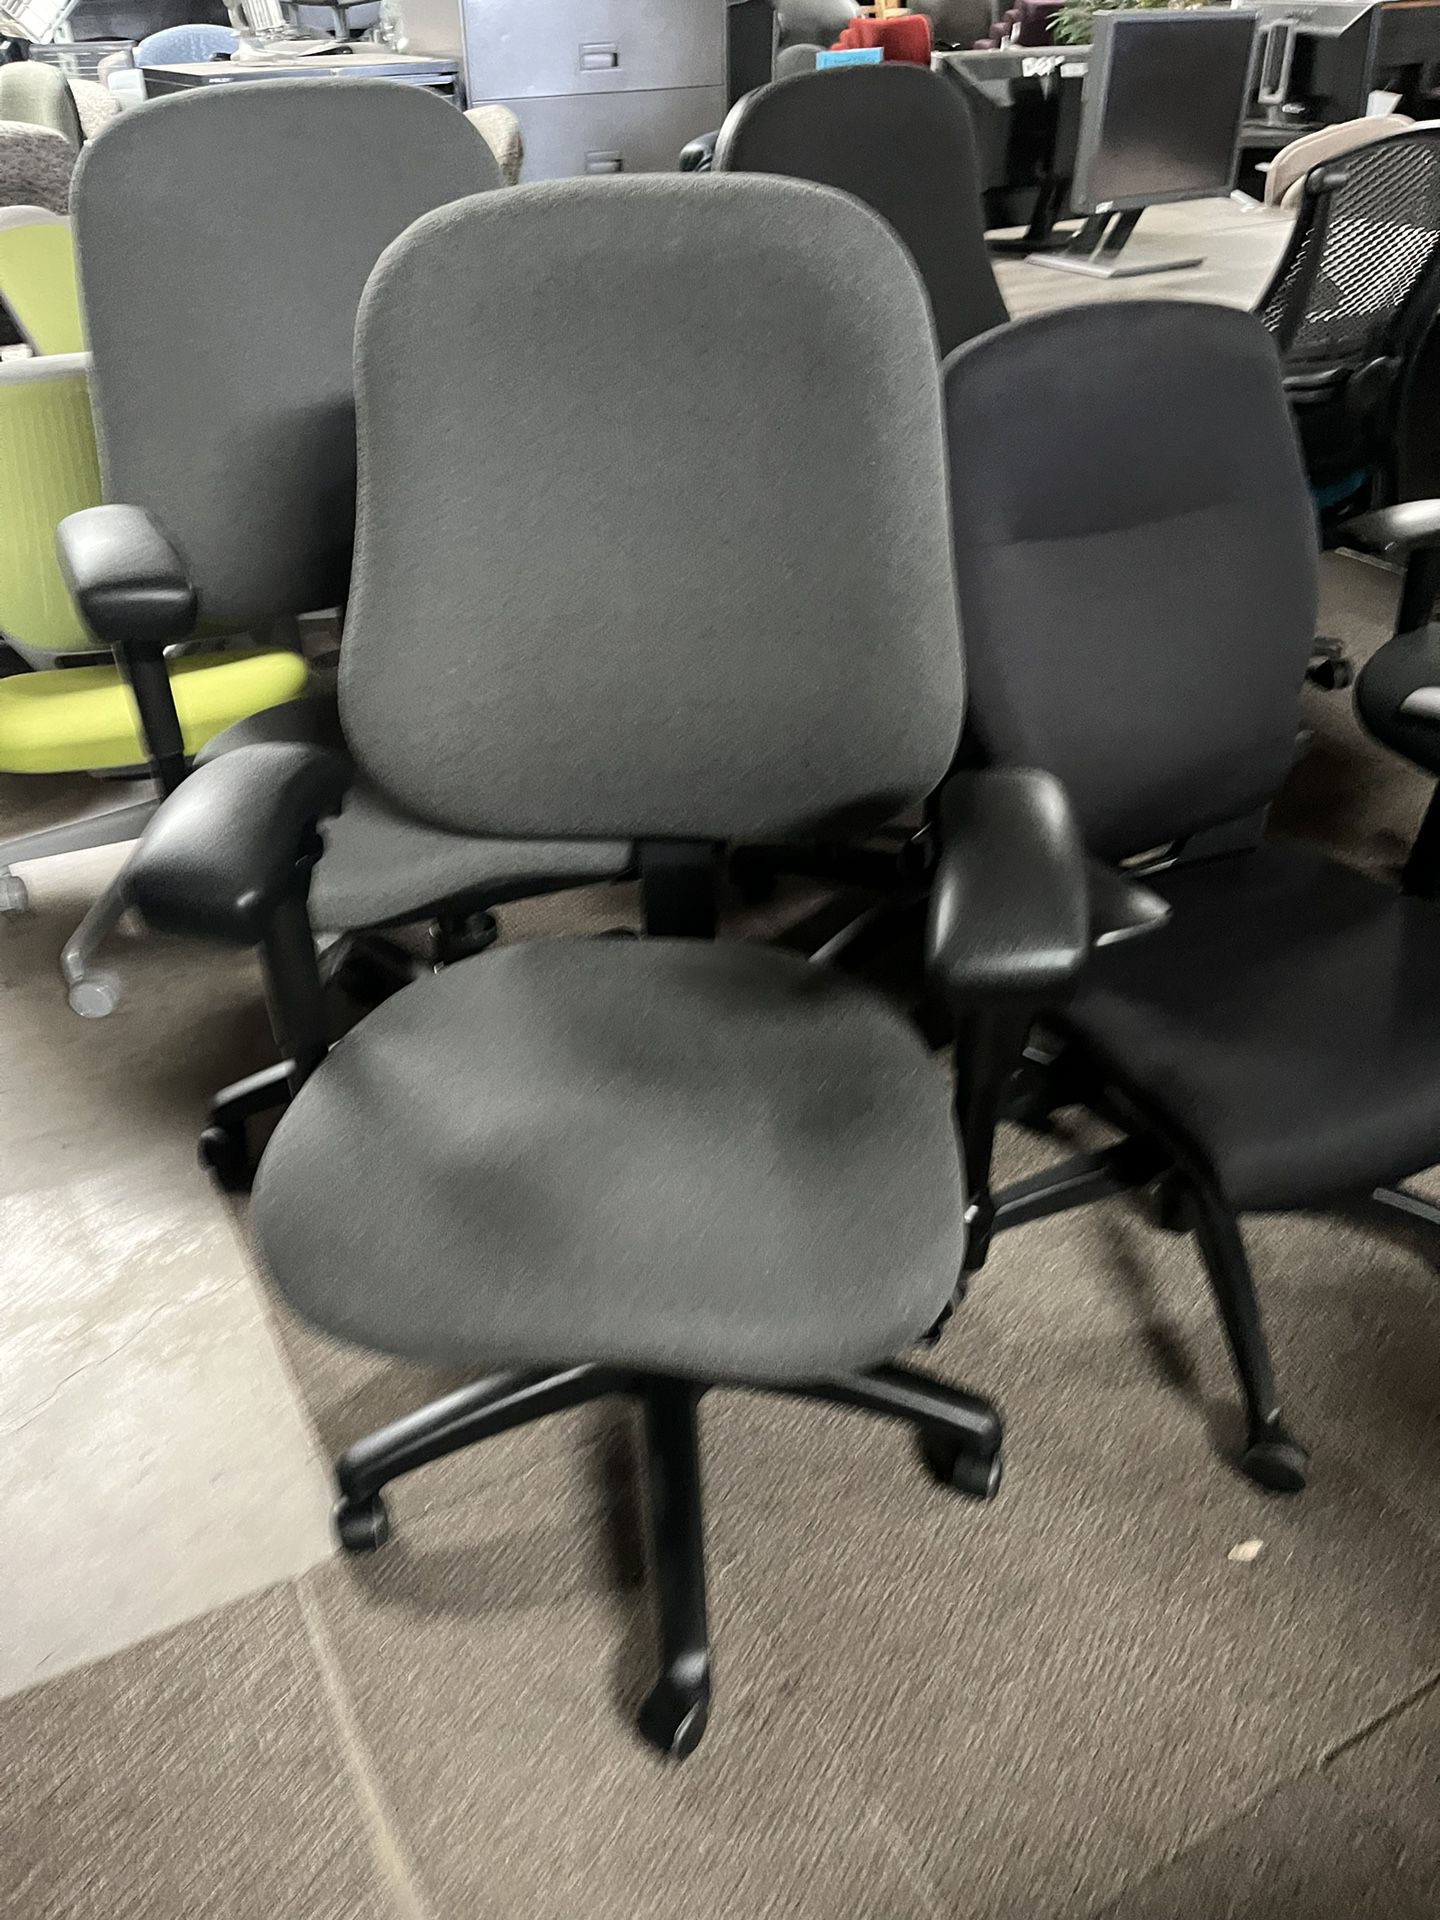 Bodybilt Office Chair 